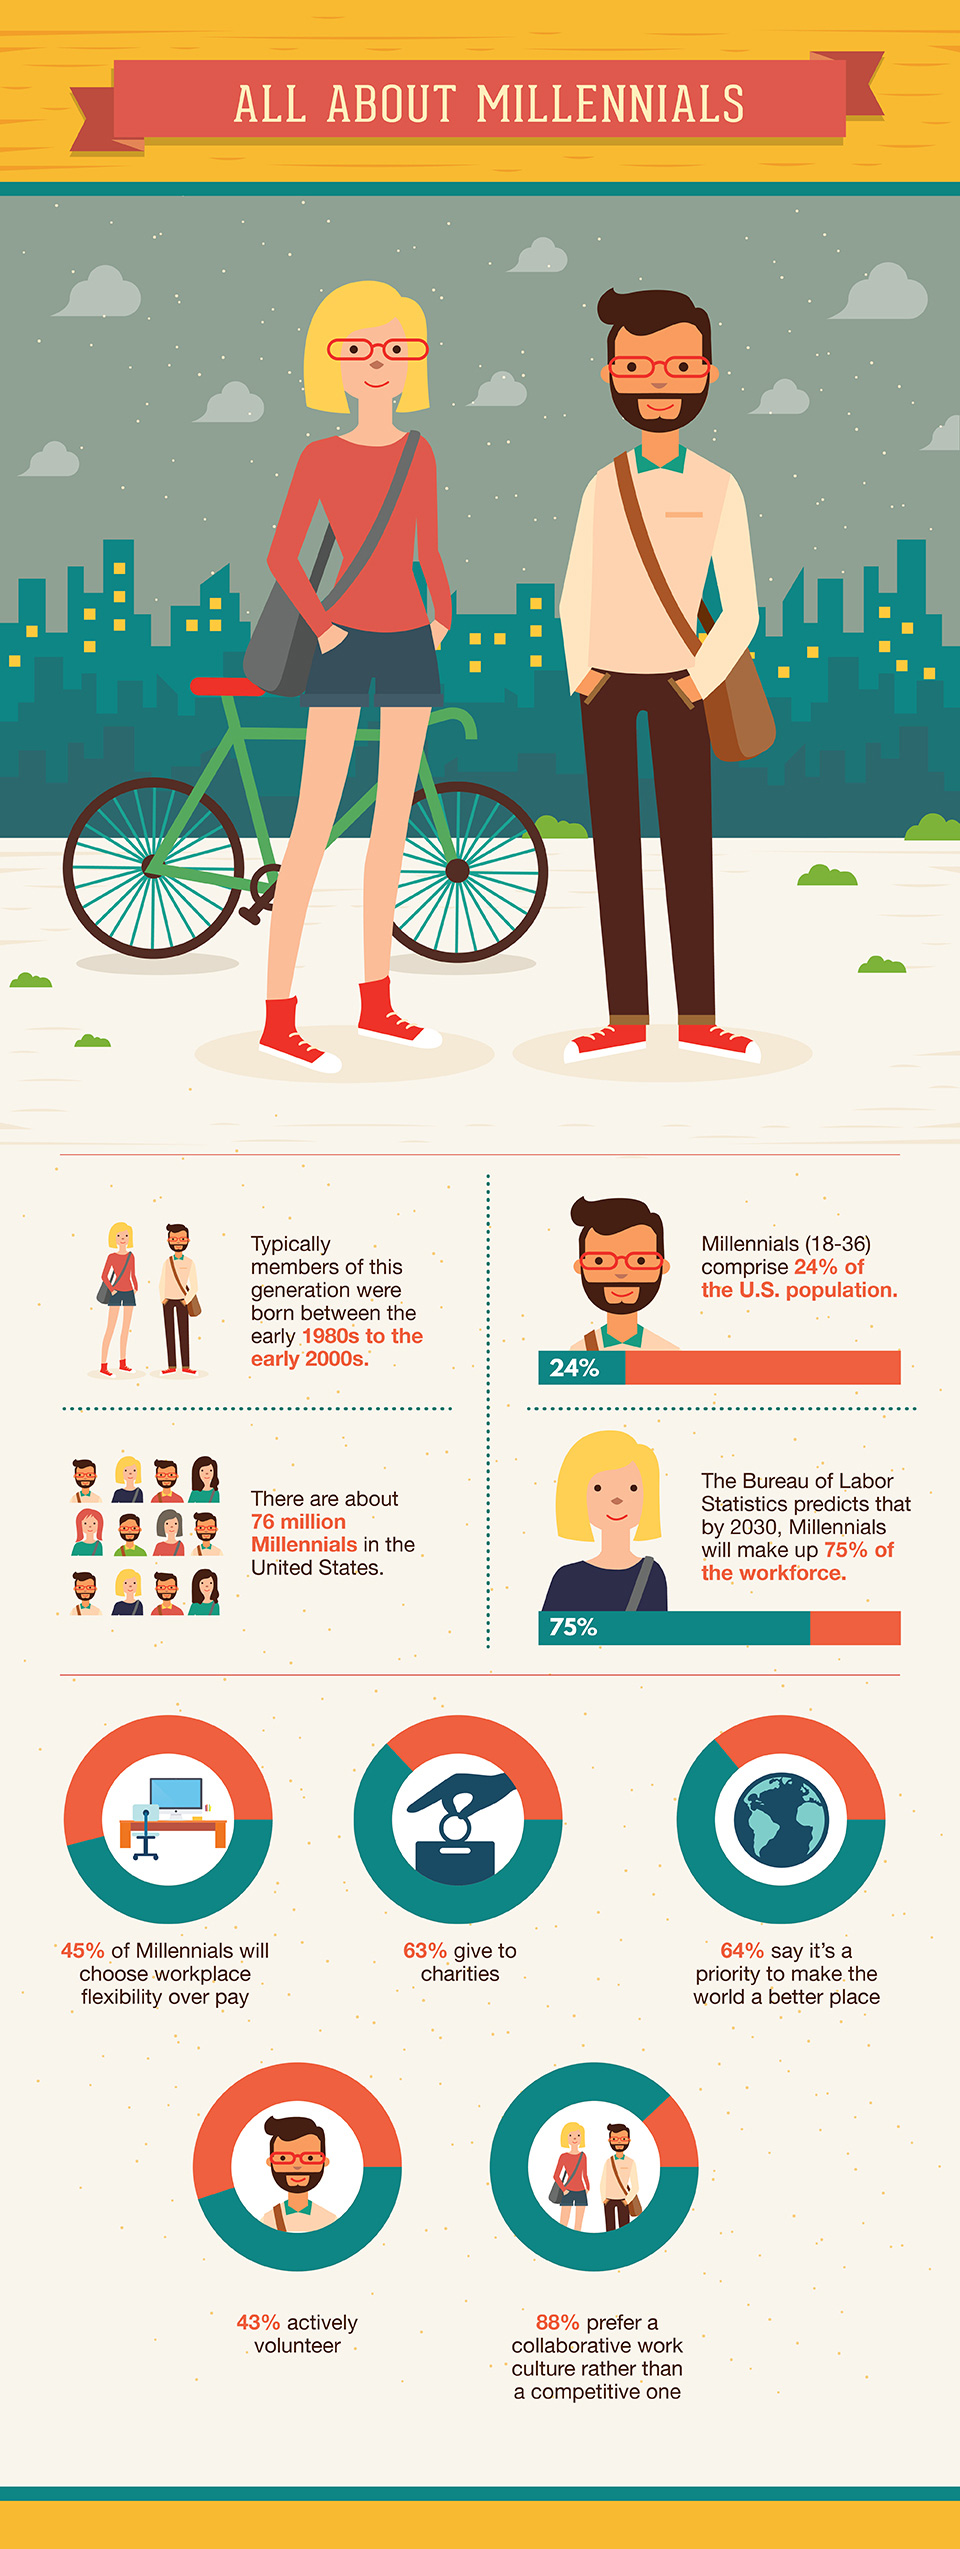 recruiting-millennial-talent-infographic-1